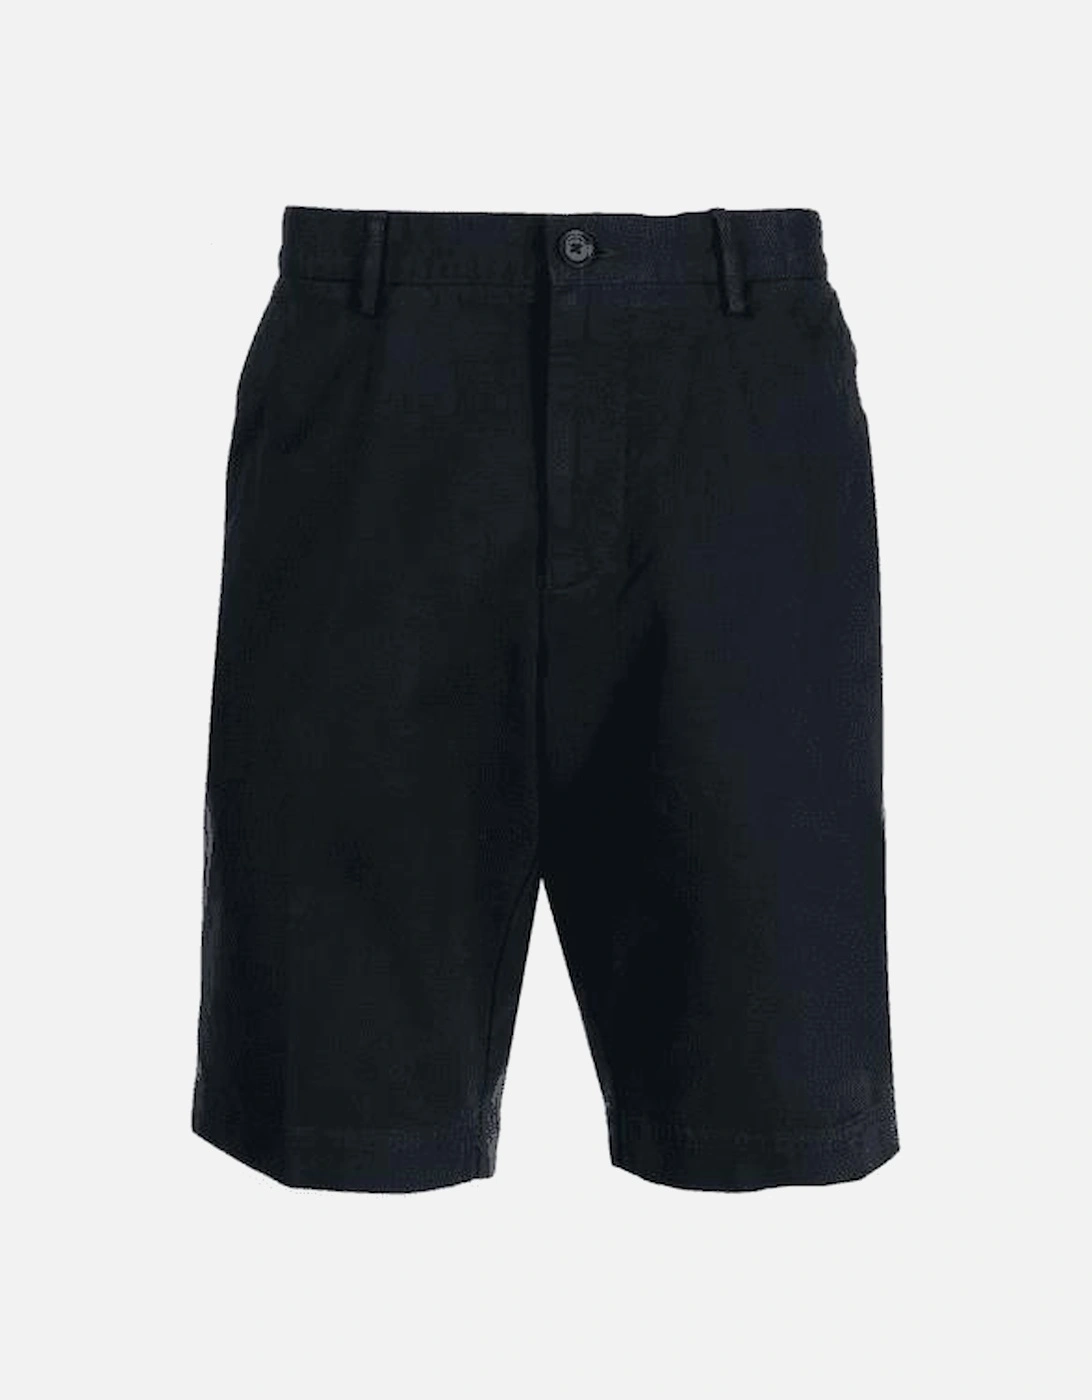 SLICE-SHORT Open Navy Slim Fit Chino Shorts, 4 of 3